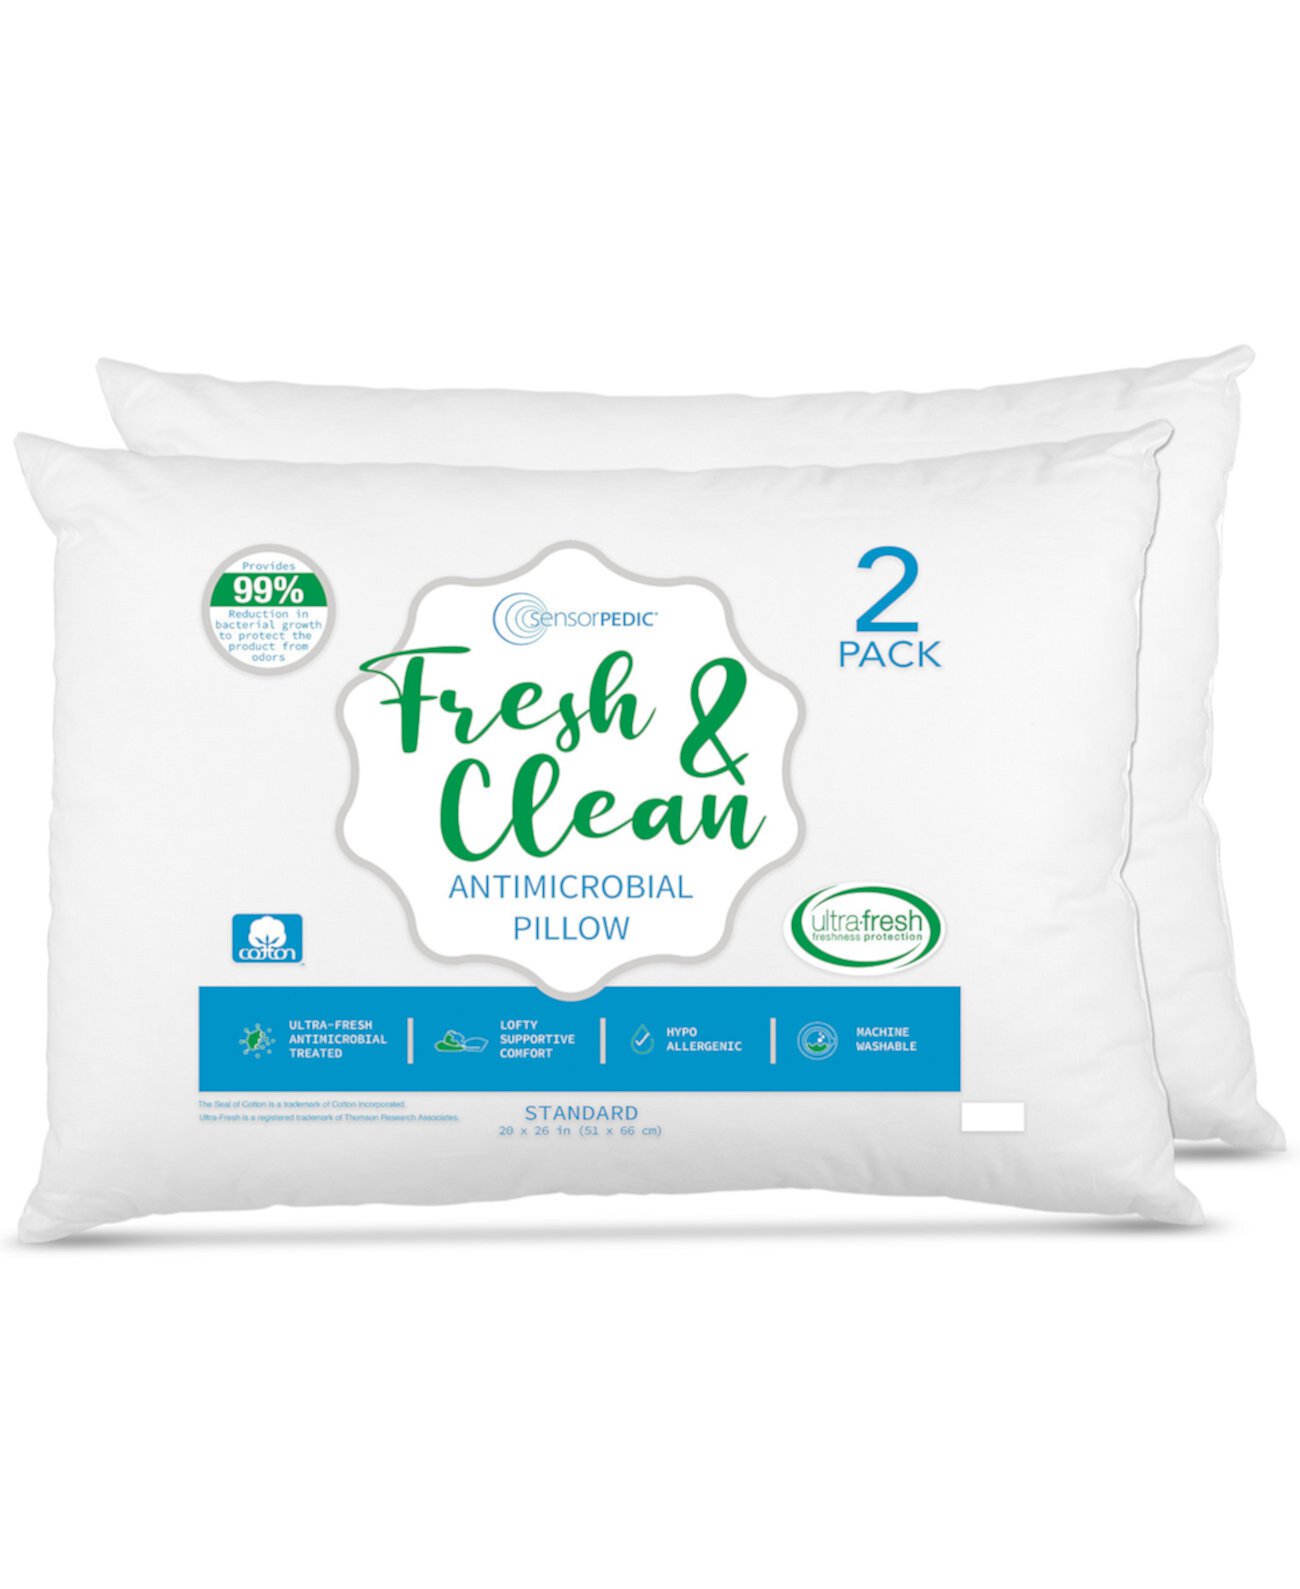 Fresh & Clean Ultra-Fresh противомикробные подушки - стандартные, 2 шт. В упаковке SensorPEDIC